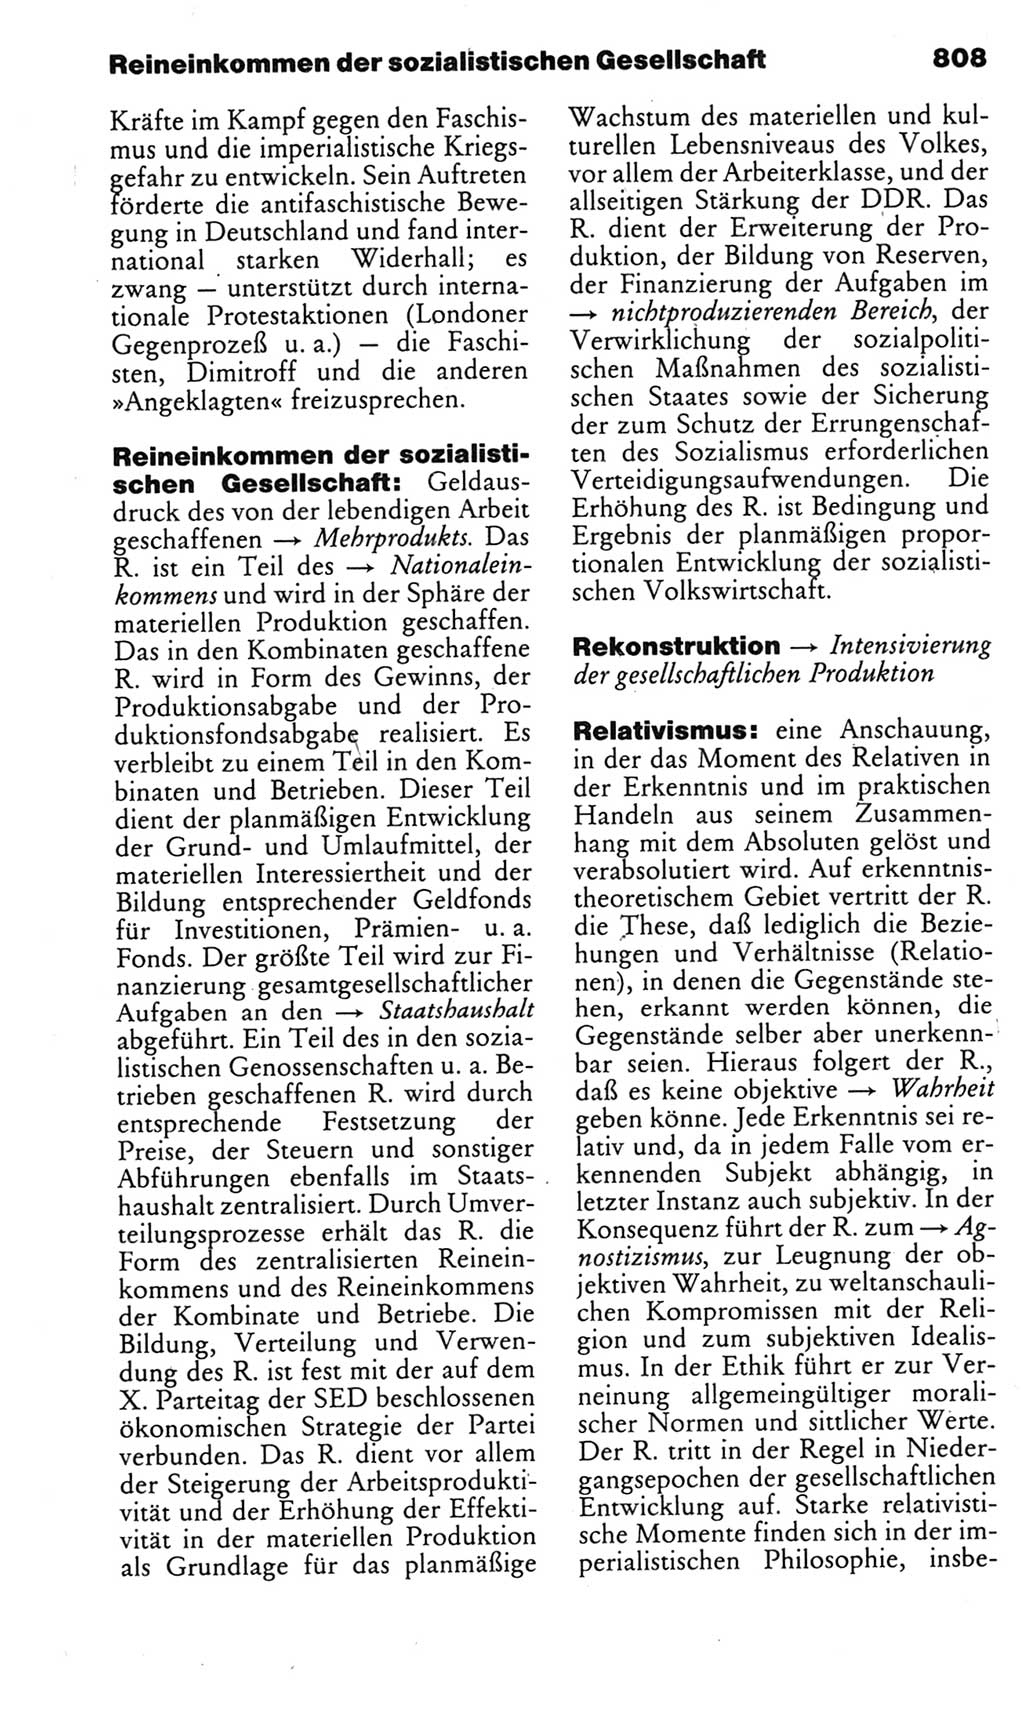 Kleines politisches Wörterbuch [Deutsche Demokratische Republik (DDR)] 1985, Seite 808 (Kl. pol. Wb. DDR 1985, S. 808)